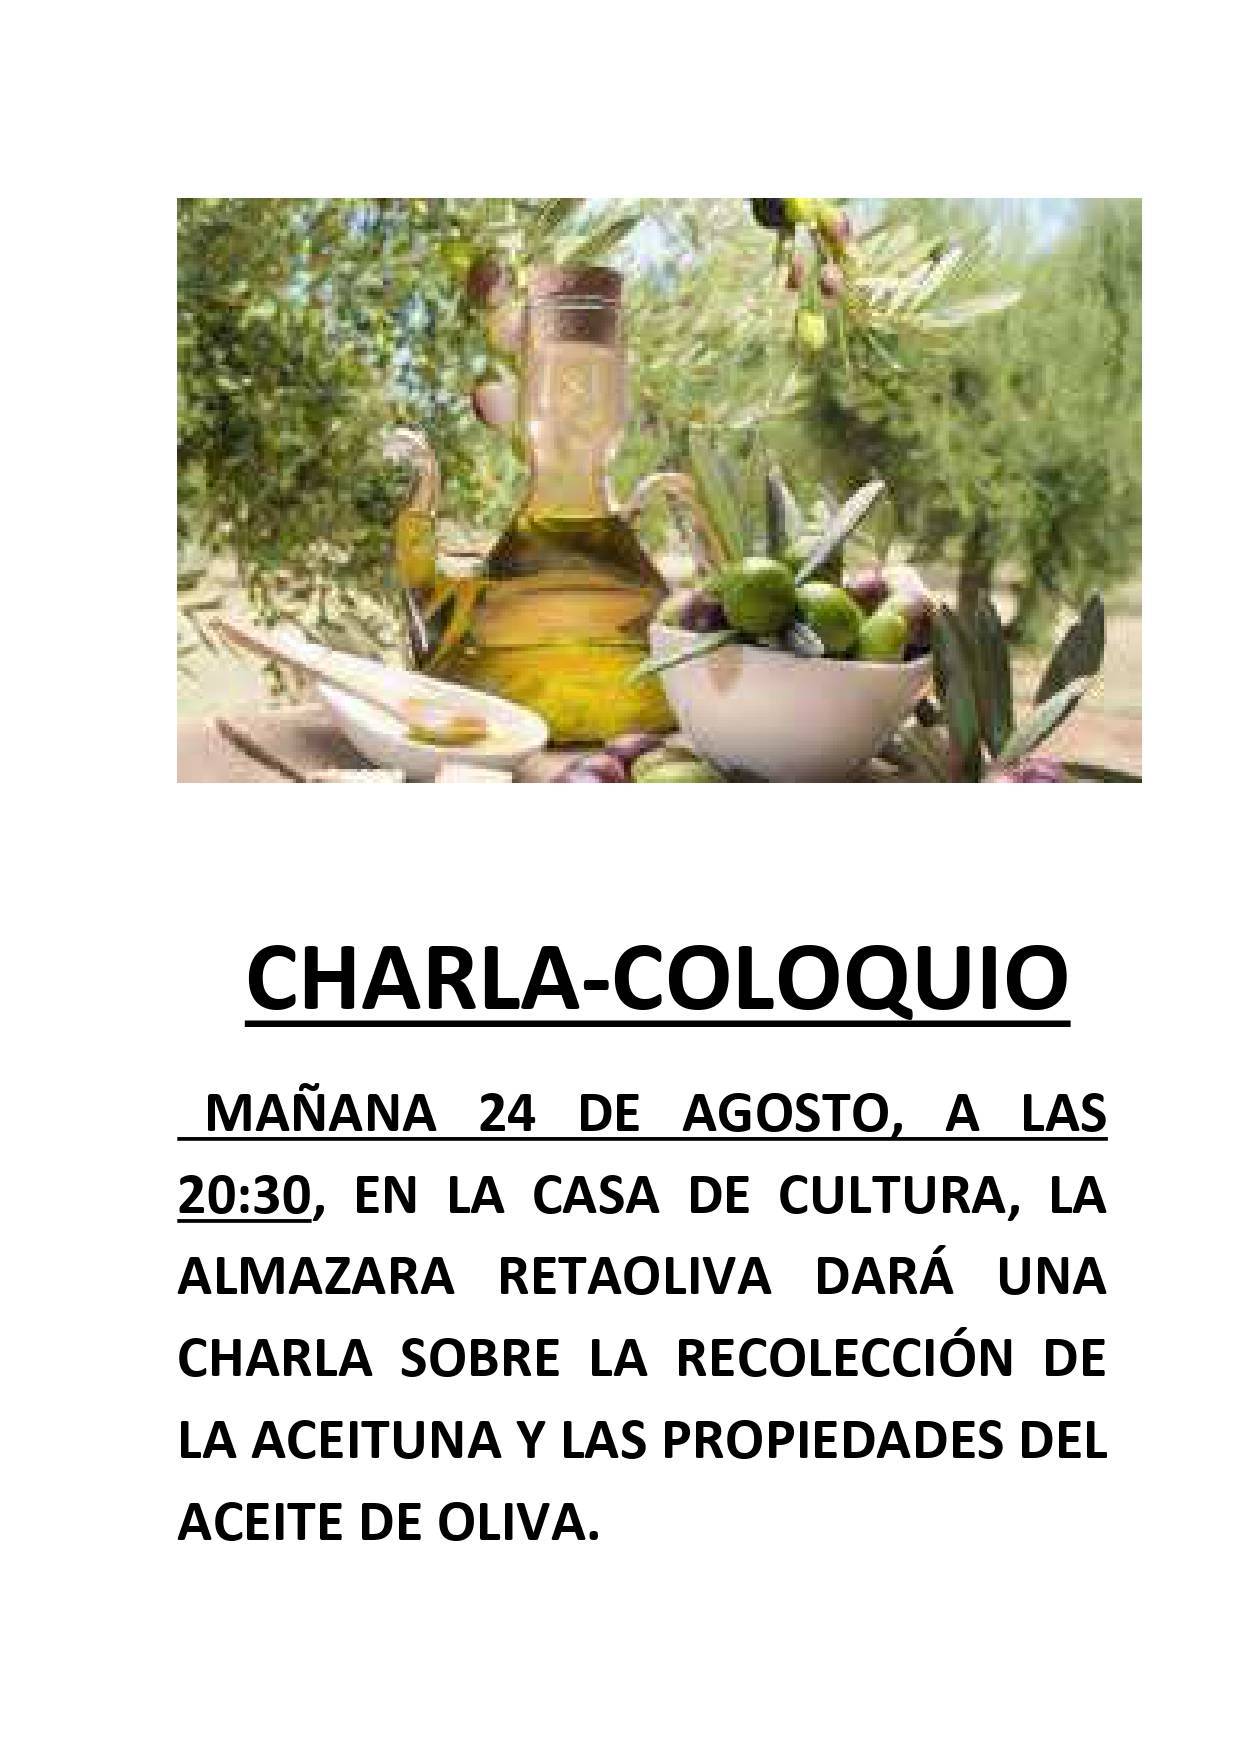 Charla-coloquio sobre la aceituna y el aceite de oliva (2021) - Berzocana (Cáceres)